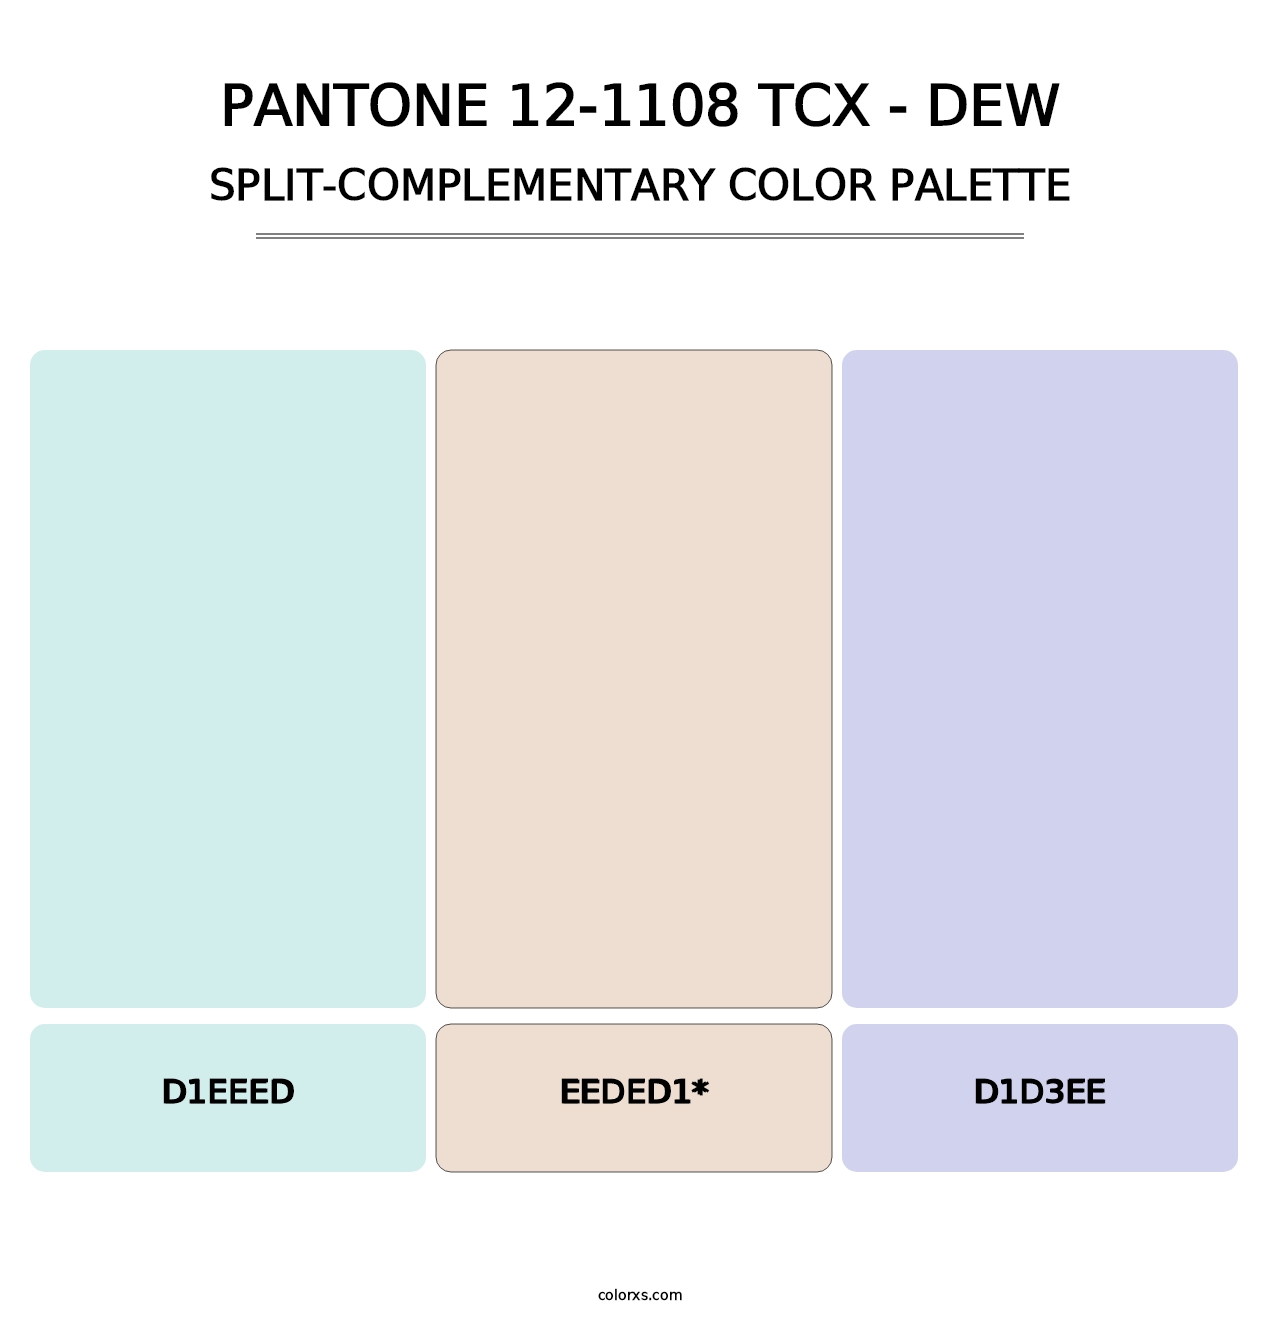 PANTONE 12-1108 TCX - Dew - Split-Complementary Color Palette